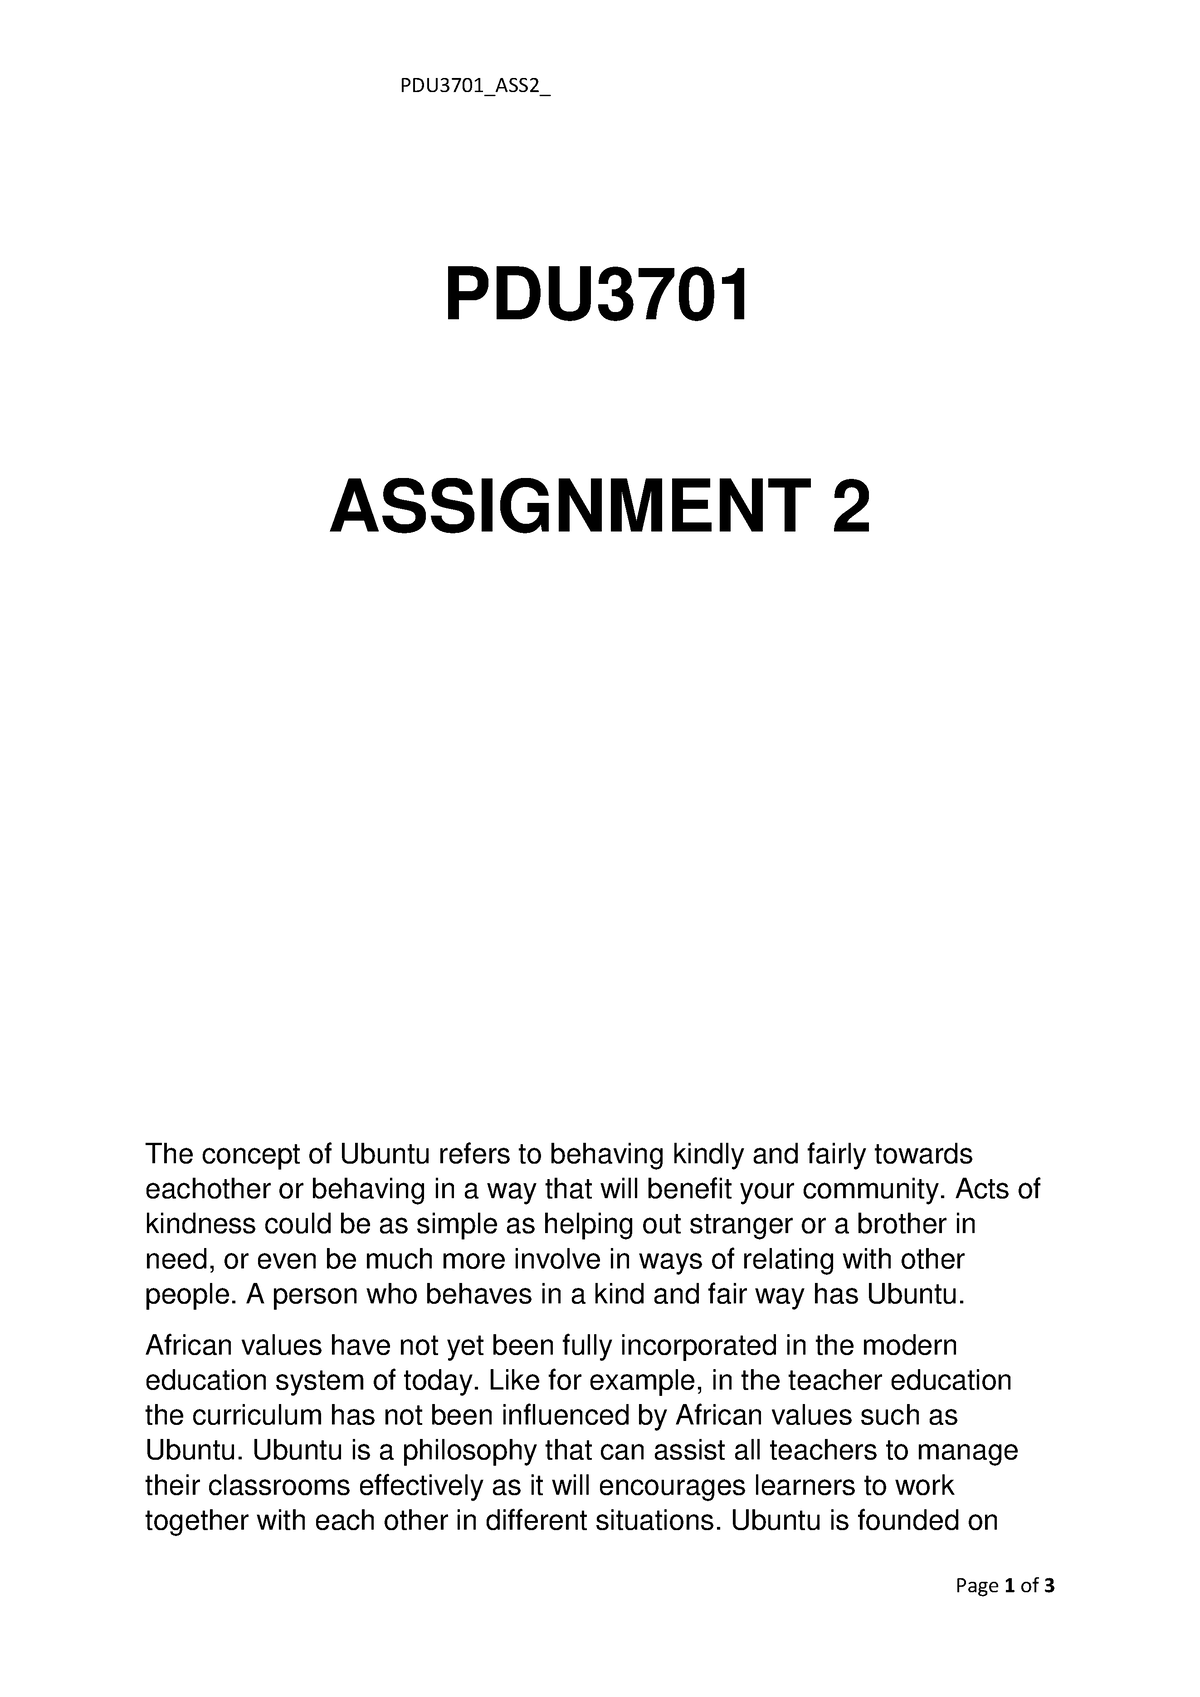 pdu3701 assignment 2 ubuntu